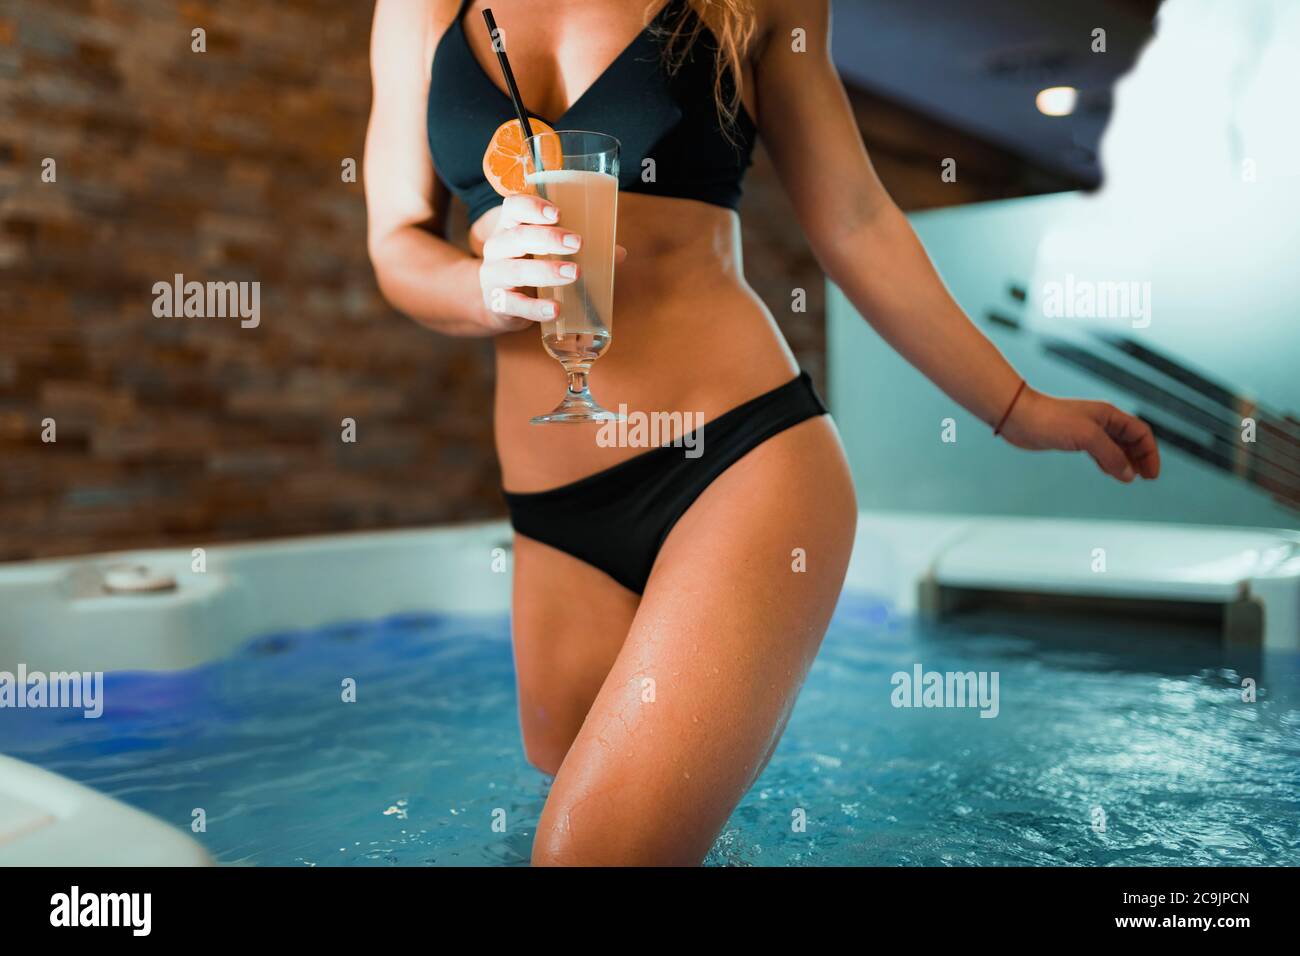 Frau genießt Whirlpool in einem Spa. Limonade trinken und entspannen. Stockfoto